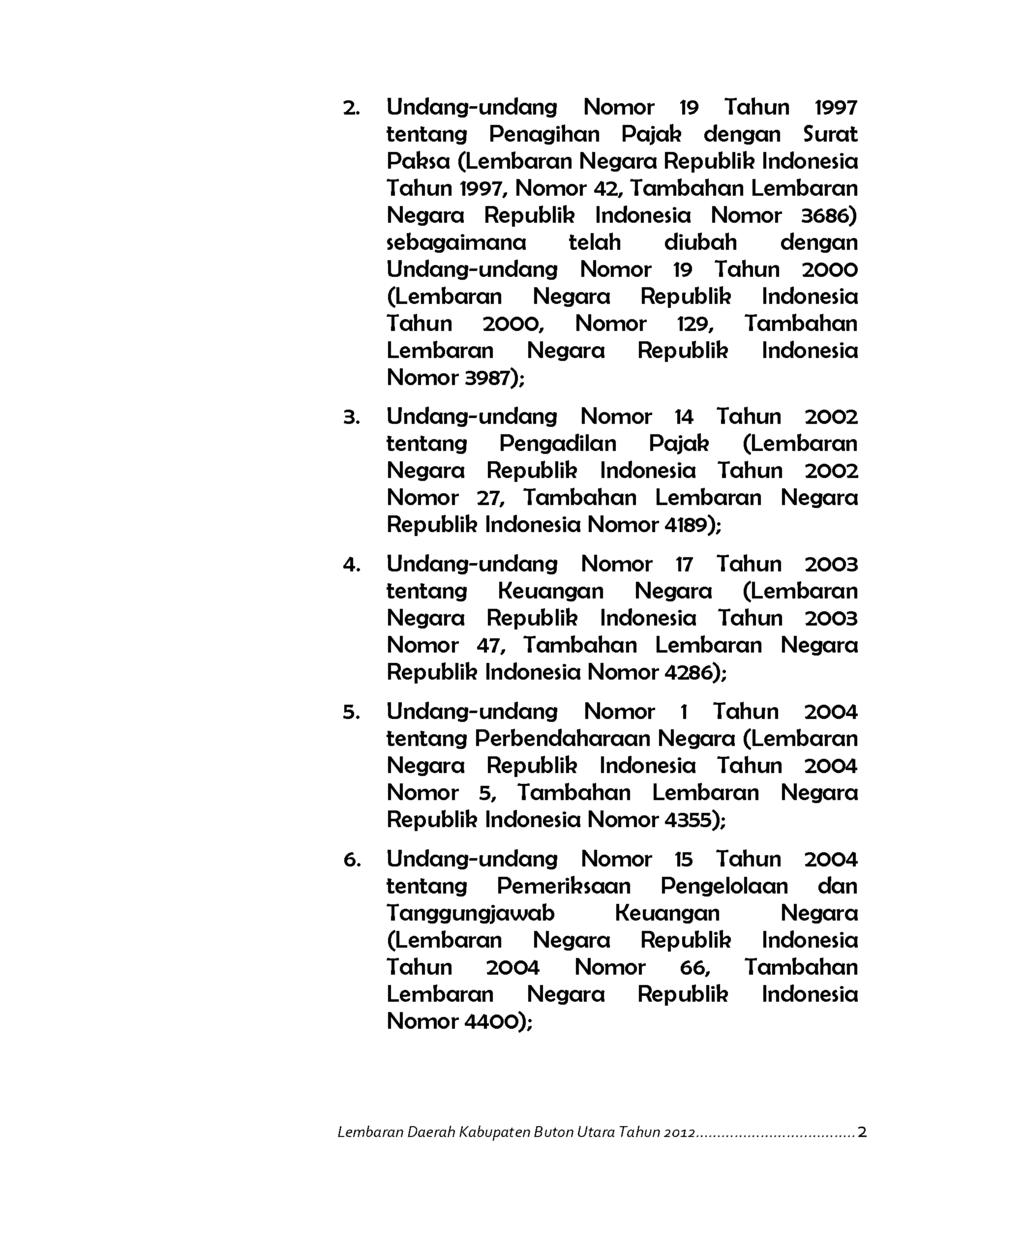 2. Undang-undang Nomor 19 Tahun 1997 tentang Penagihan Pajak dengan Surat Paksa (Lem baran Negara Republik Indonesia Tahun 1997, Nomor 42, Tam bahan Lembaran Negara Republik Indonesia Nomor 3686)